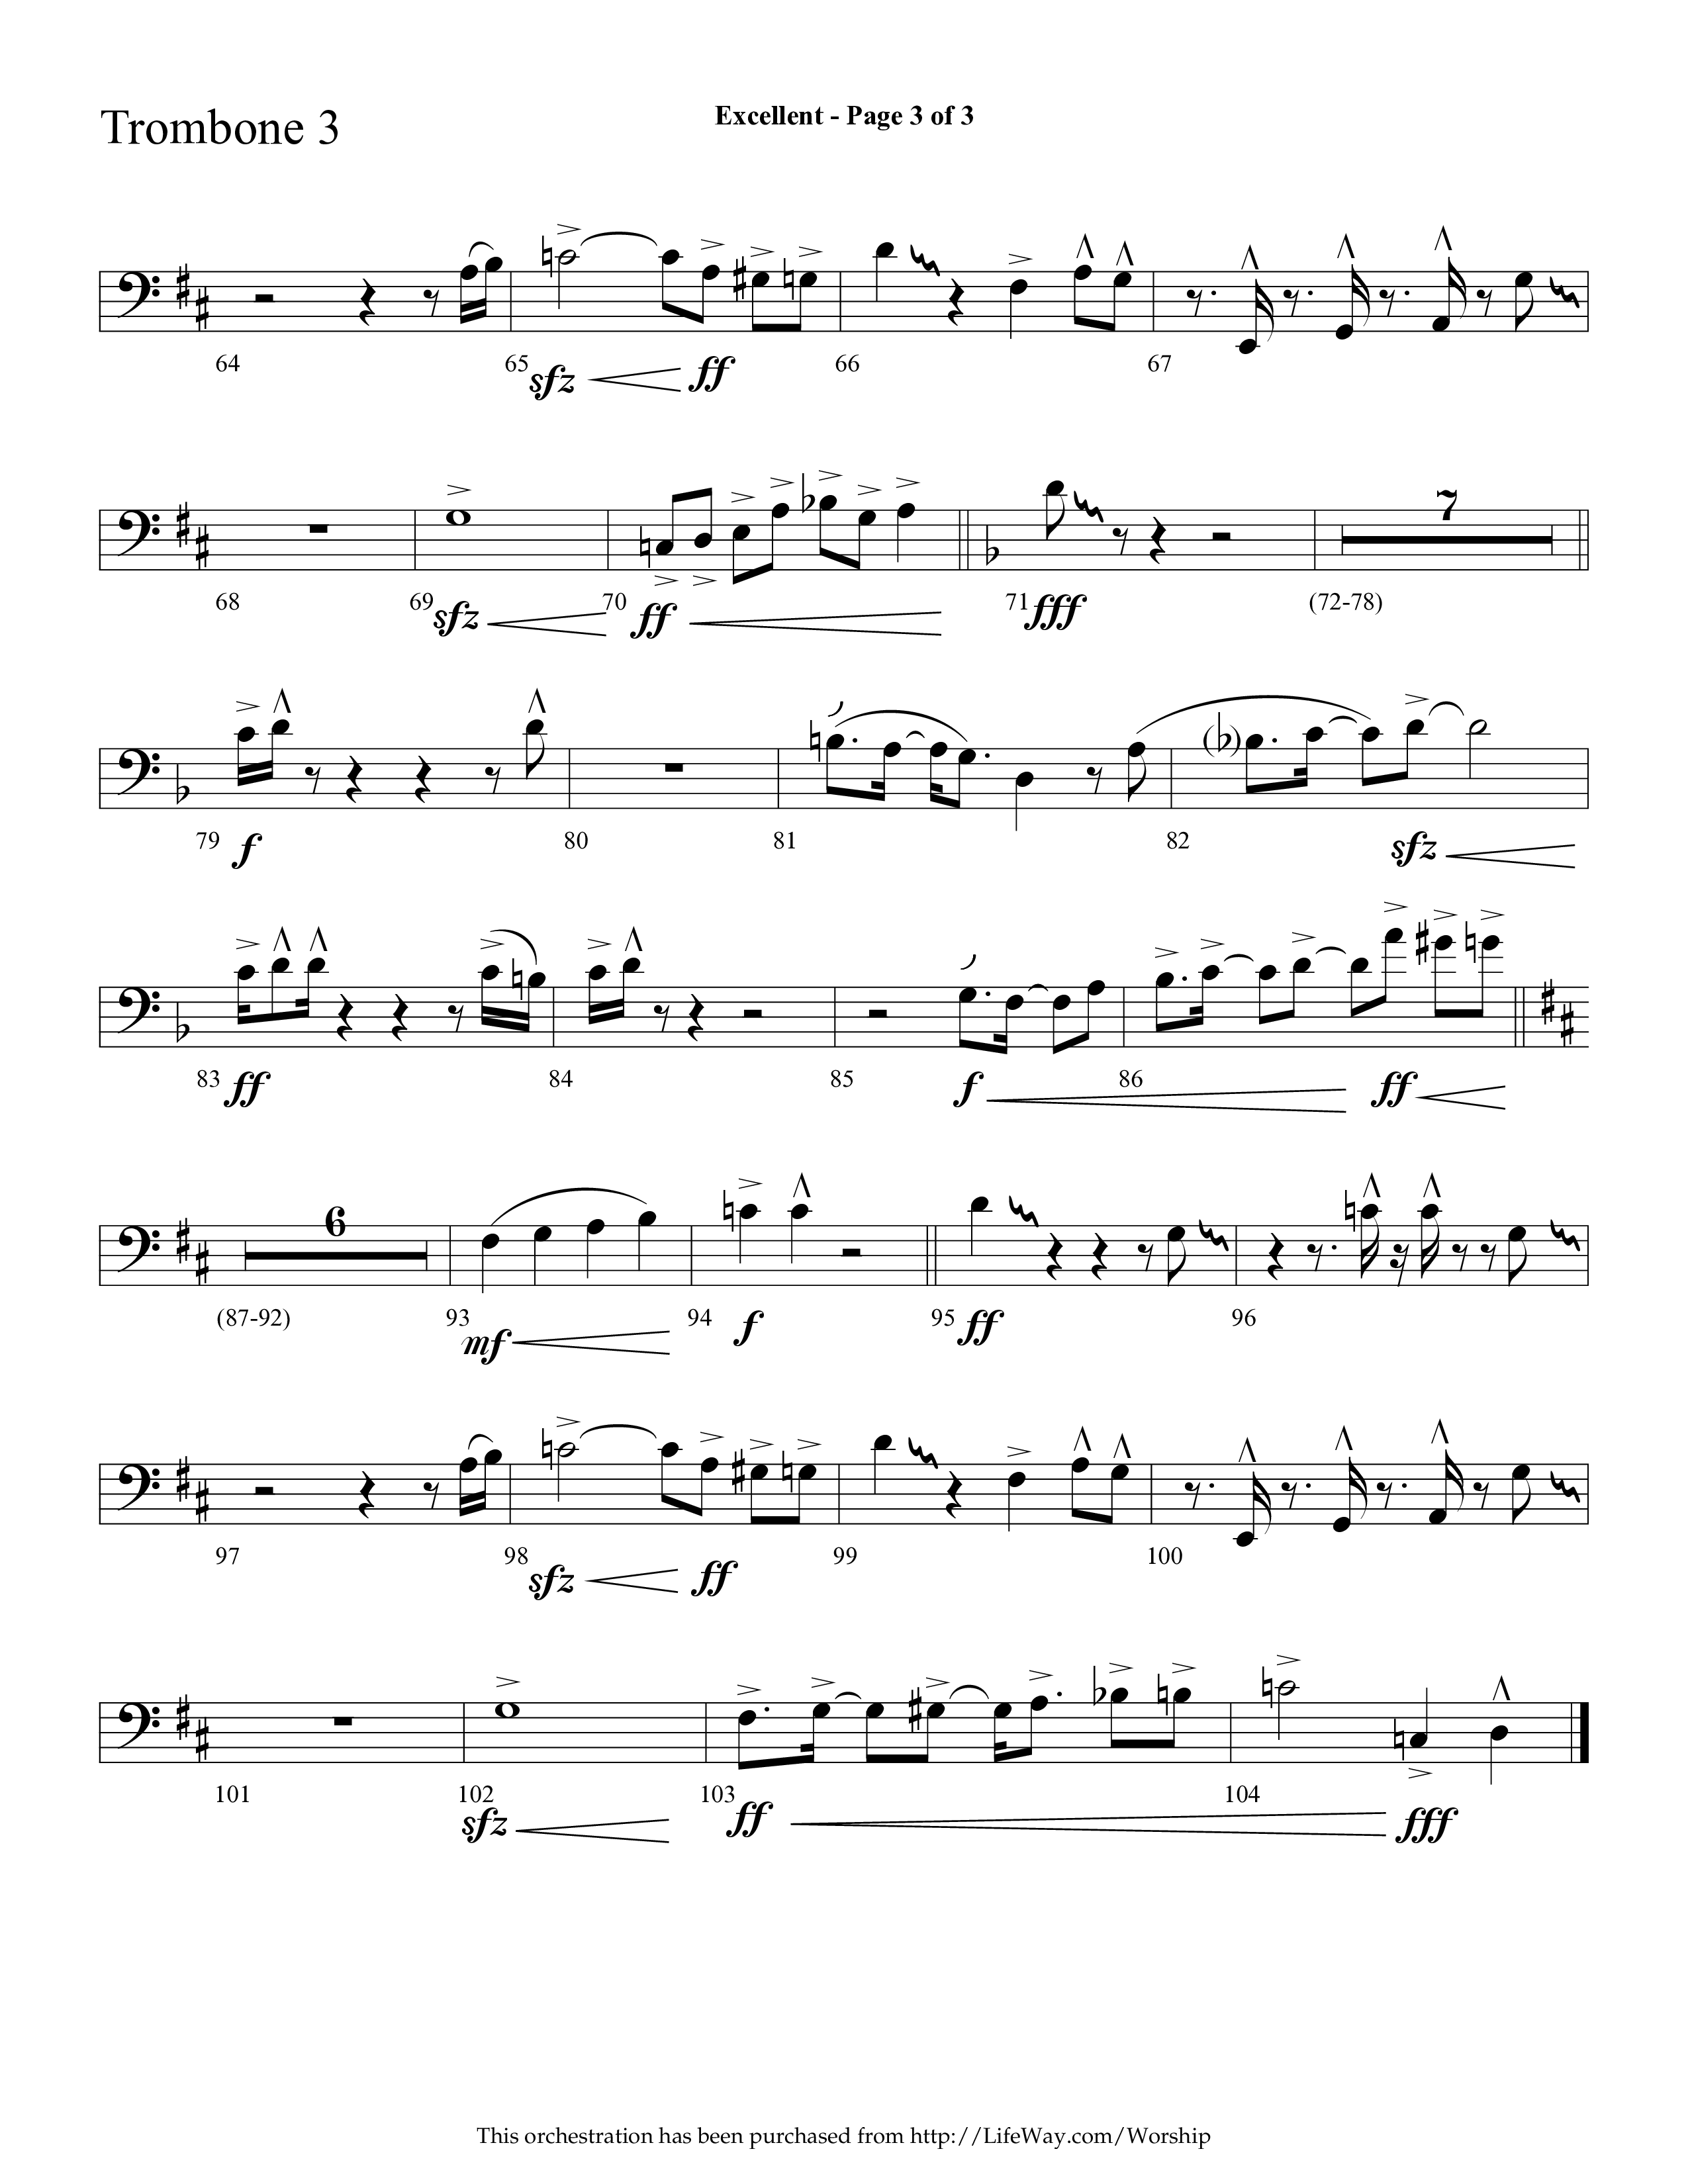 Excellent (Choral Anthem SATB) Trombone 3 (Lifeway Choral / Arr. Cliff Duren)